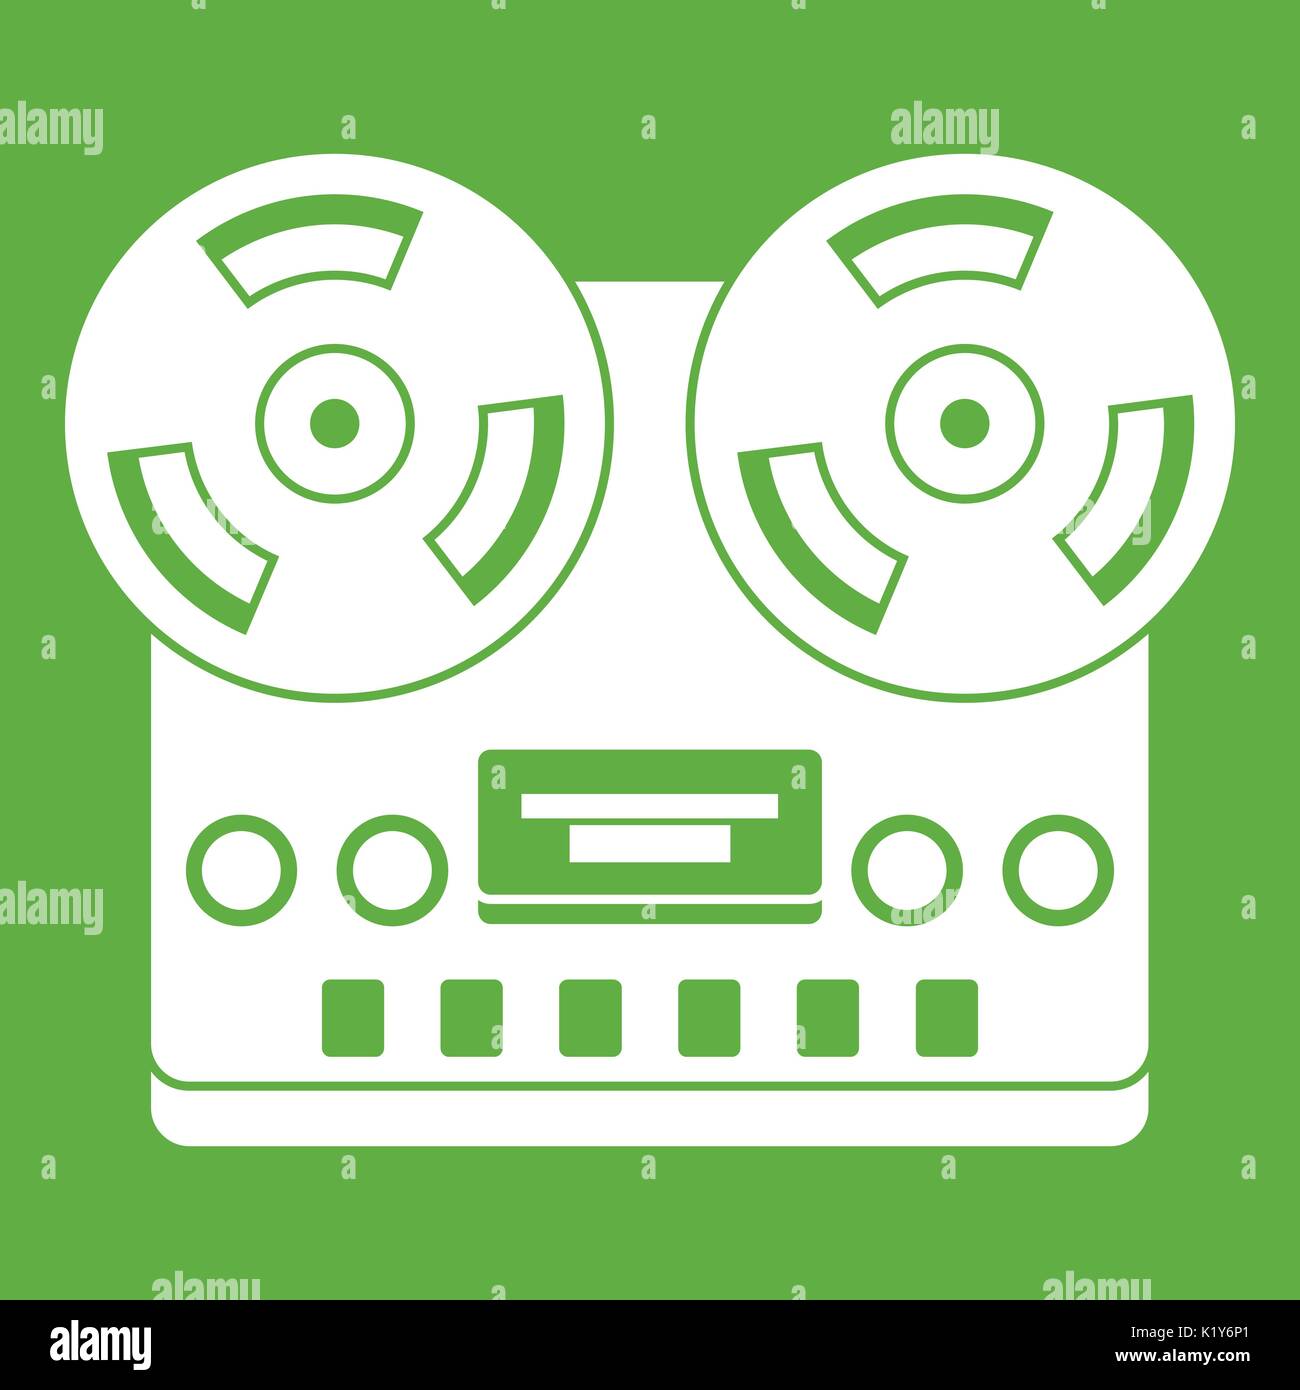 Retro tape recorder icon green Stock Vector